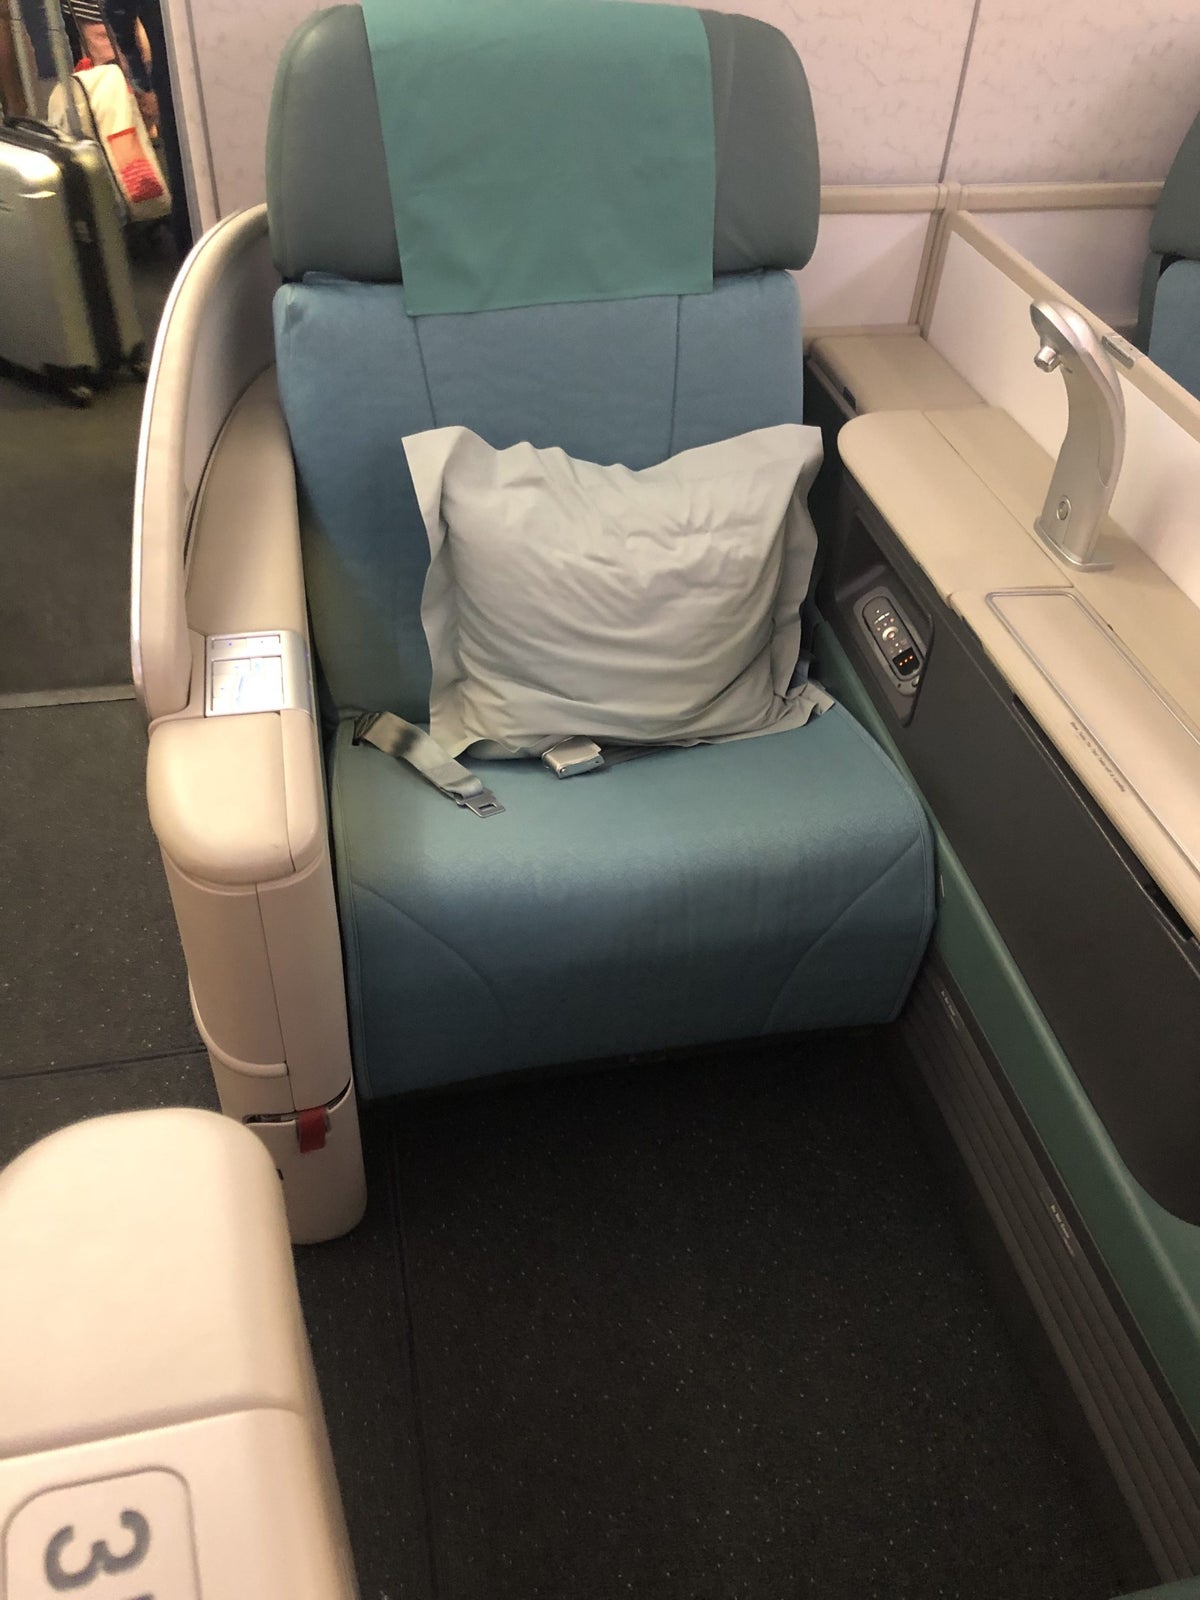 Korean Air first class seat